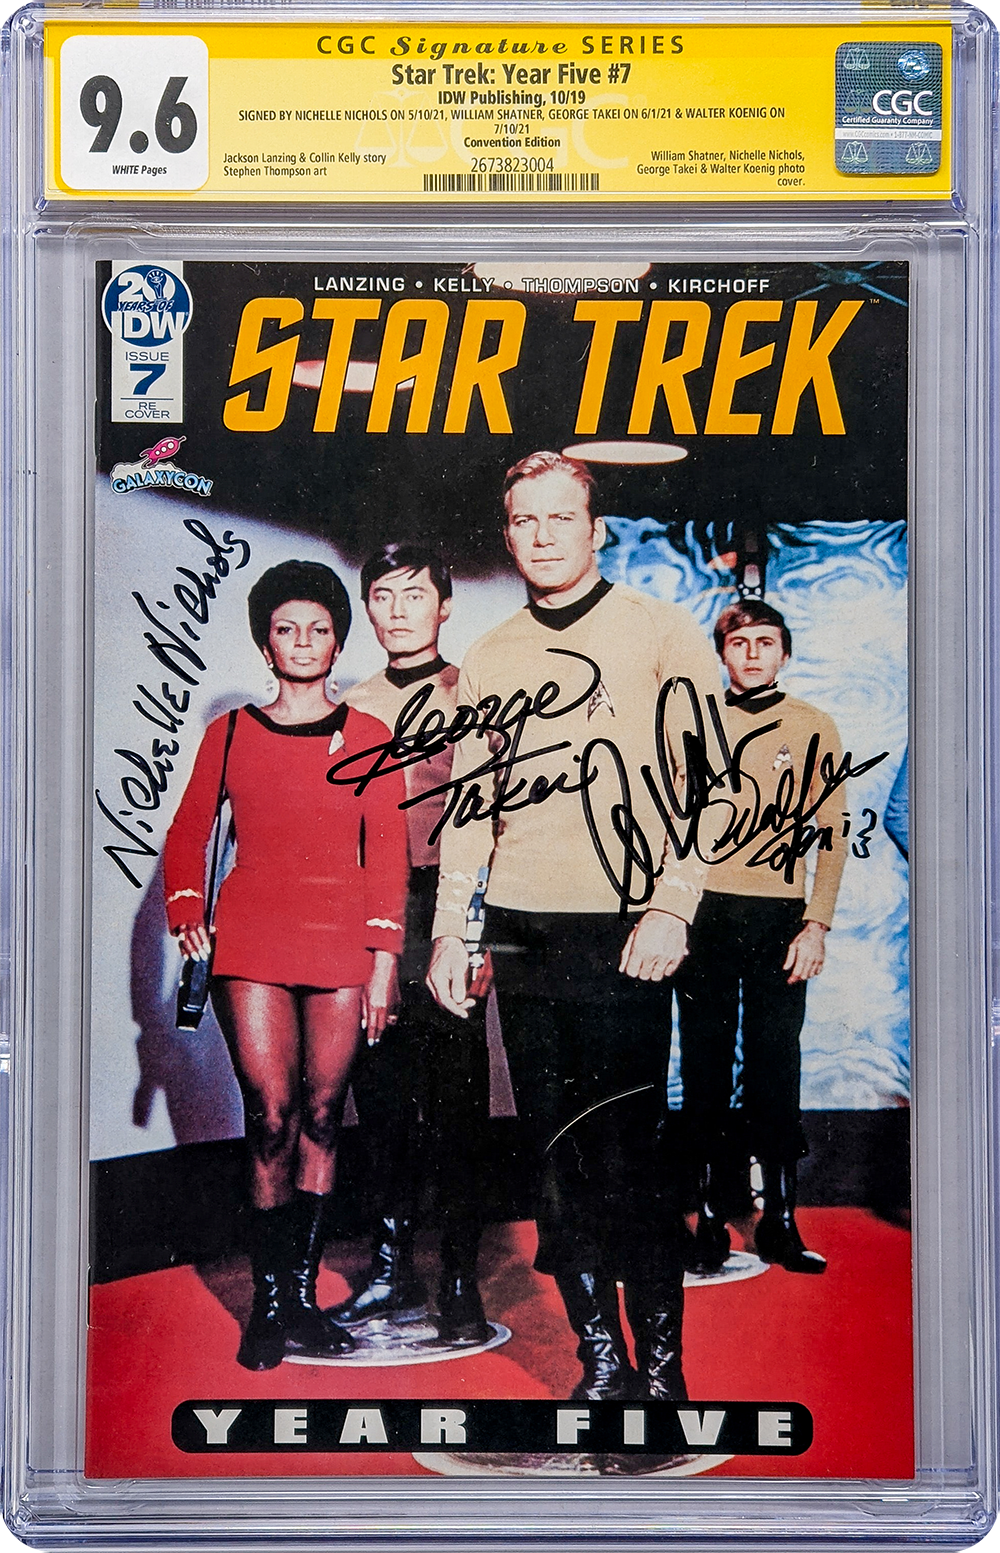 Star Trek Year Five #7 IDW CGC Signature Series 9.6 Cast x4 Signed Koenig, Shatner, Nichols, Takei